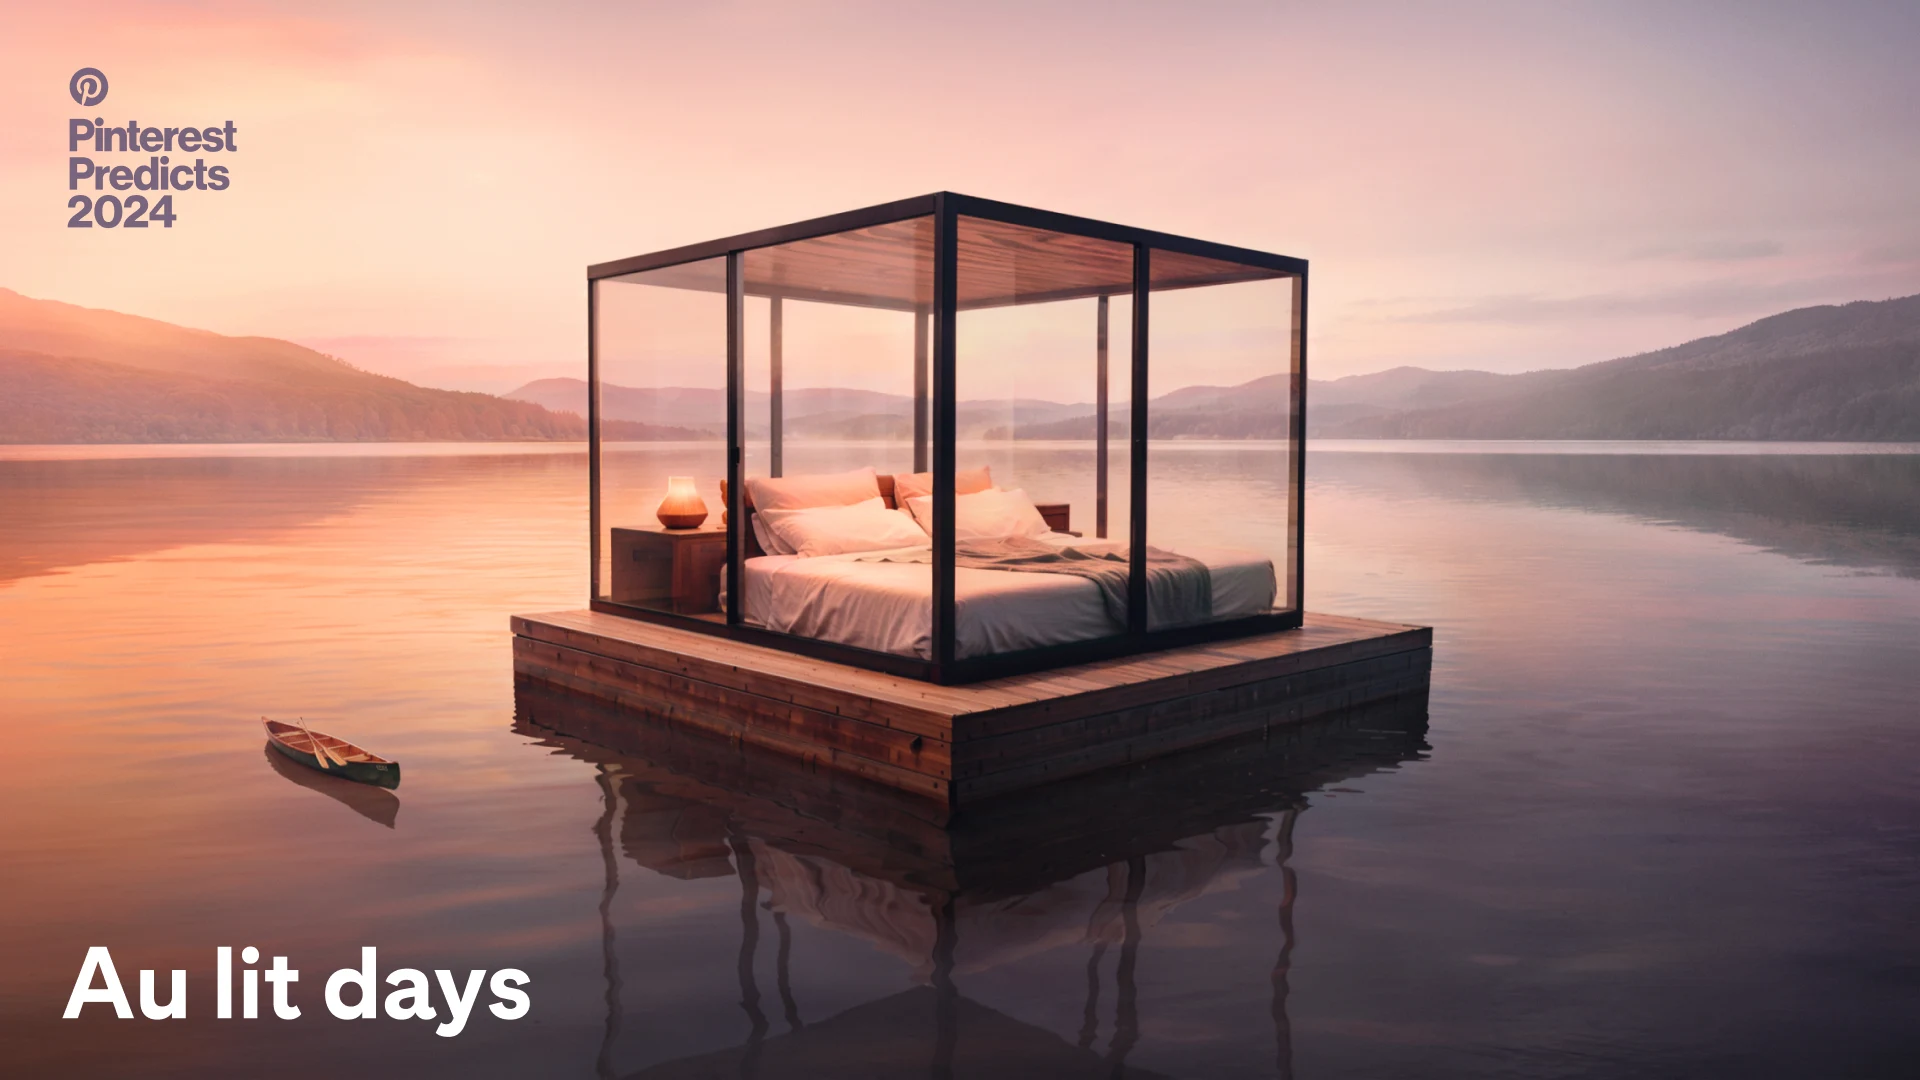 une terrasse en bois supporte un lit douillet et une lampe entourée de verre, et la structure flotte sur une rivière tranquille au coucher du soleil